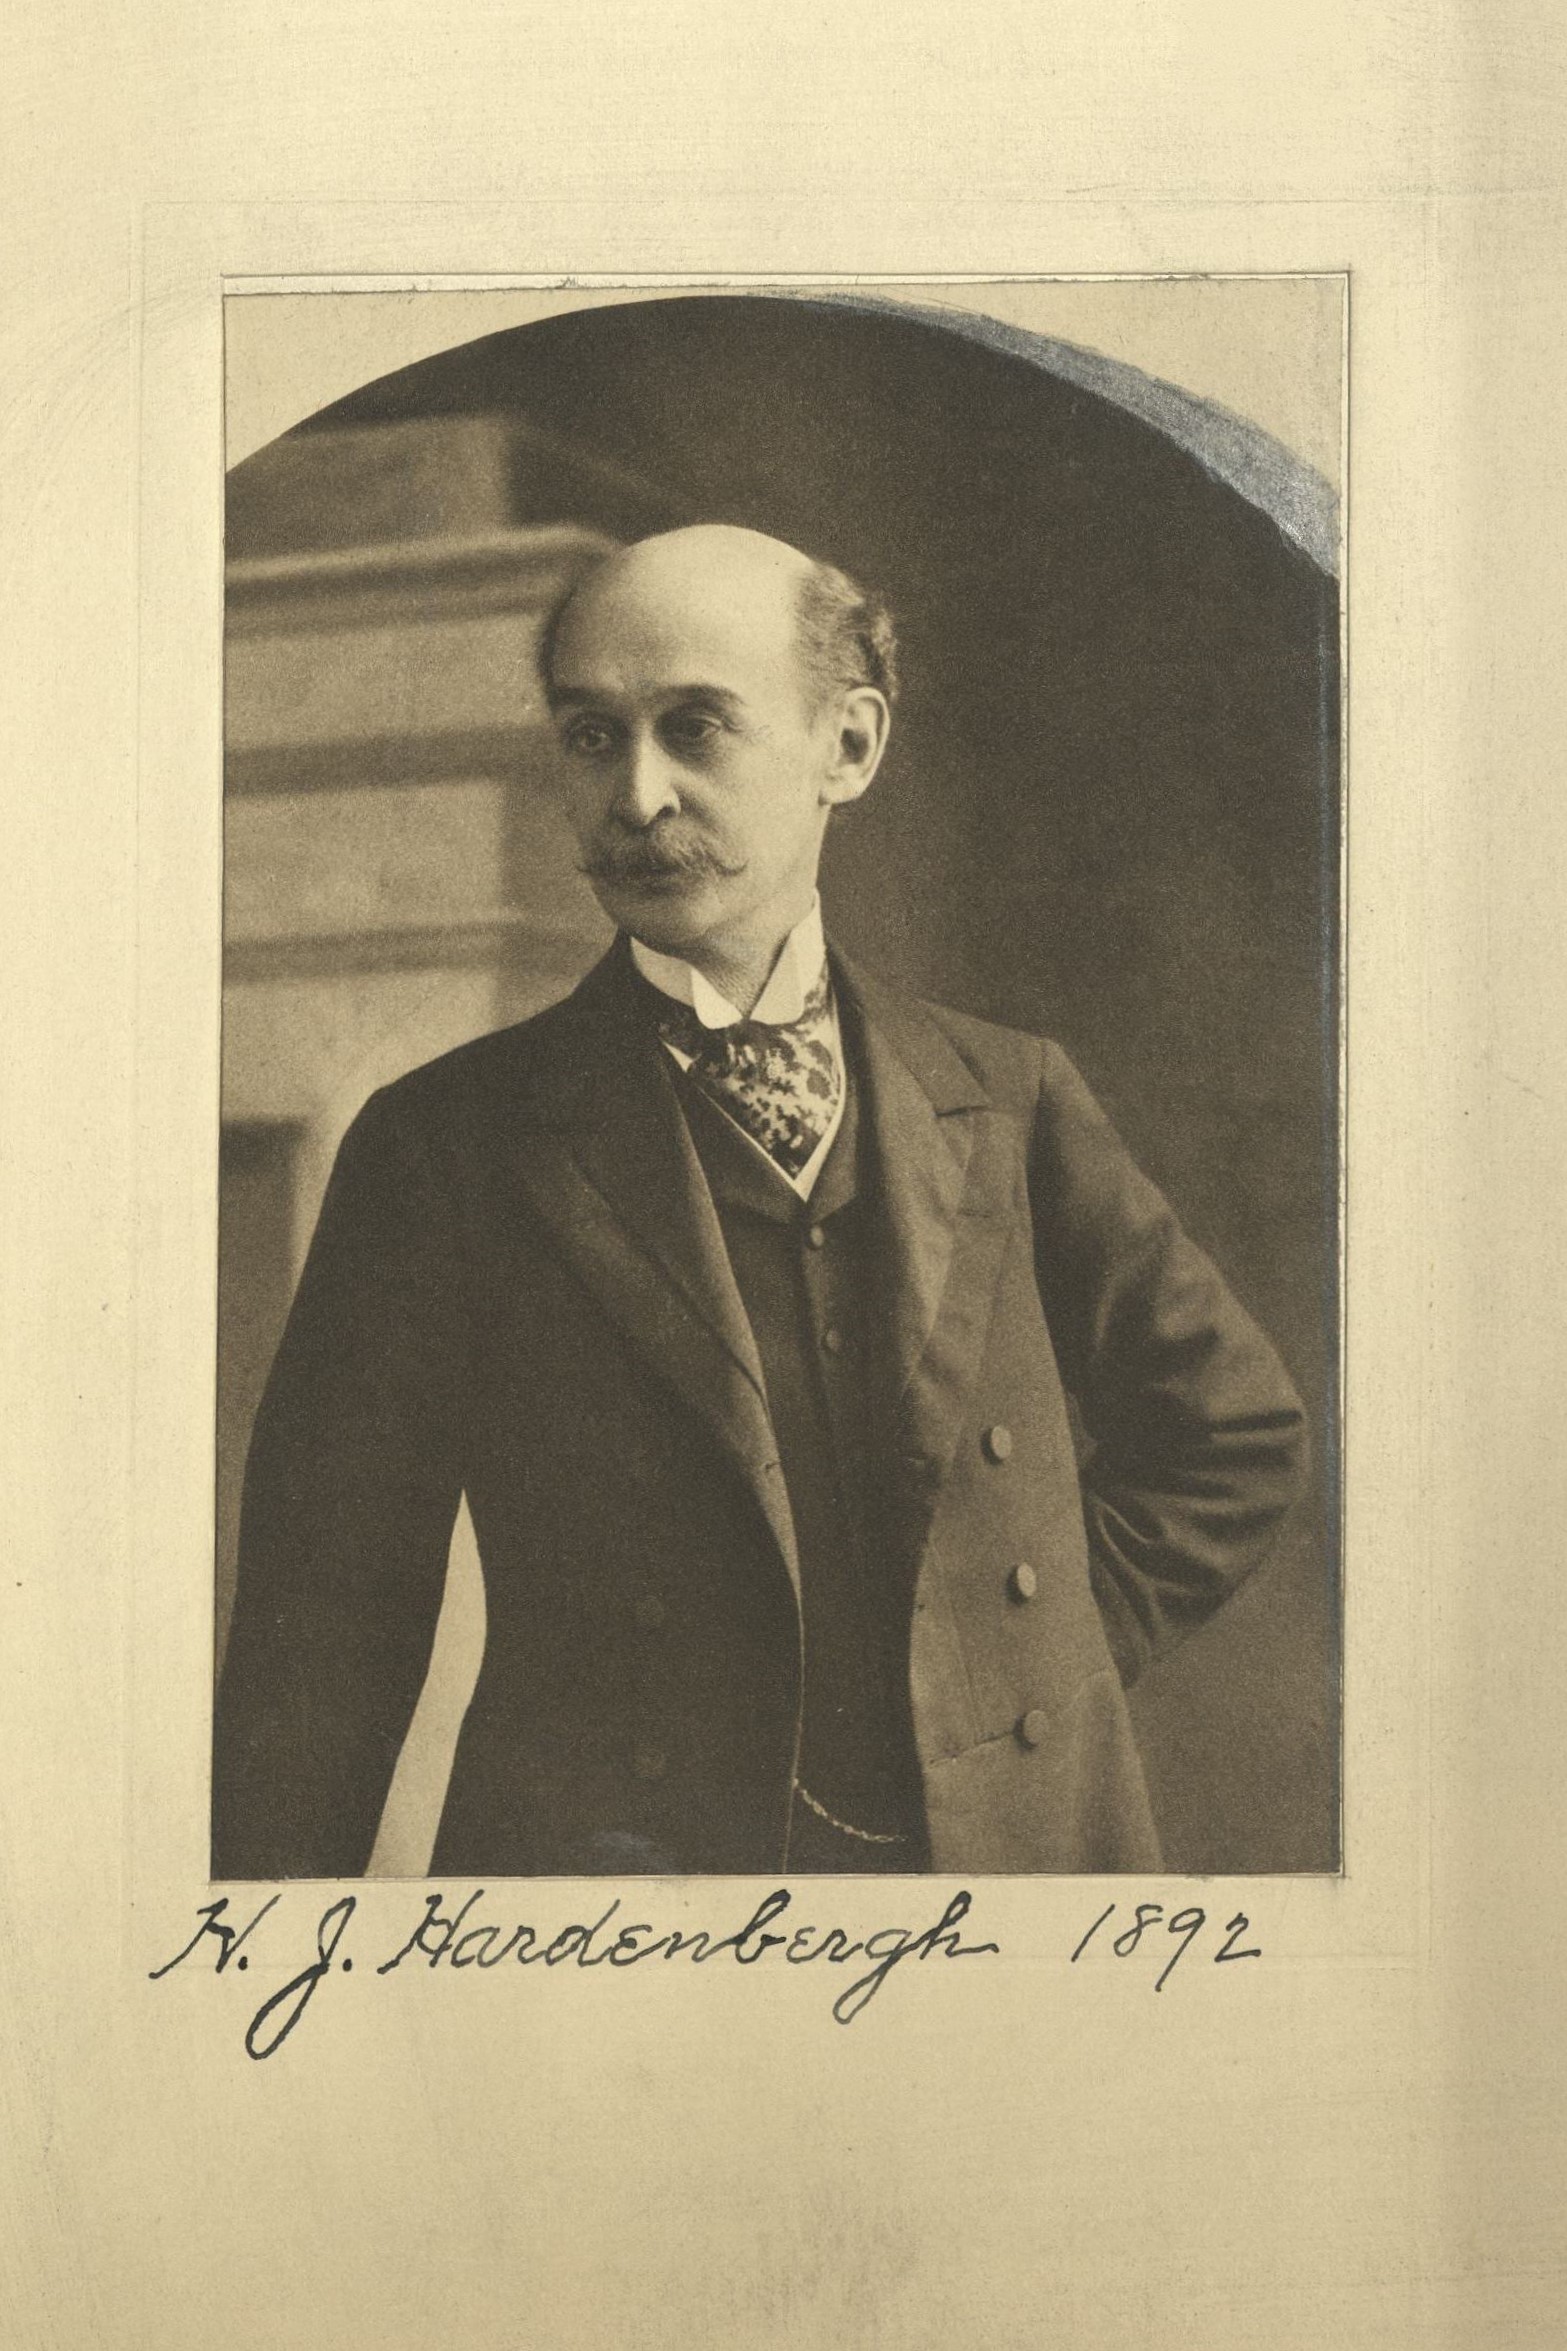 Member portrait of Henry J. Hardenbergh